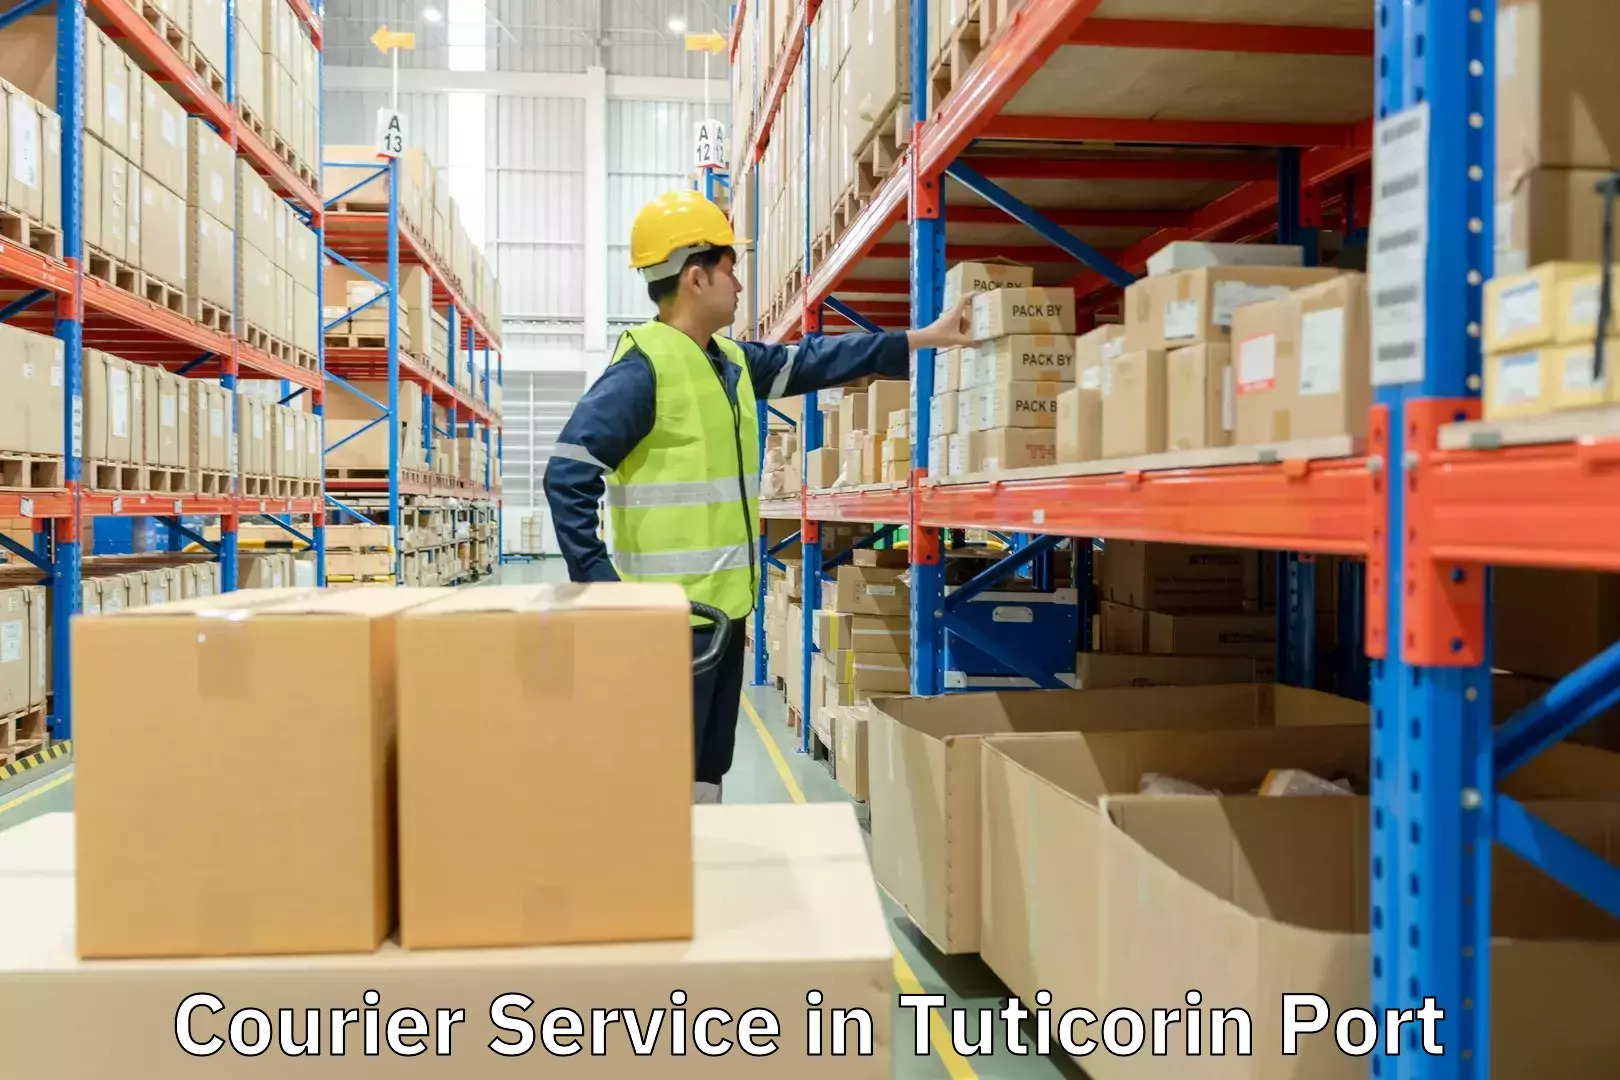 Heavy parcel delivery in Tuticorin Port